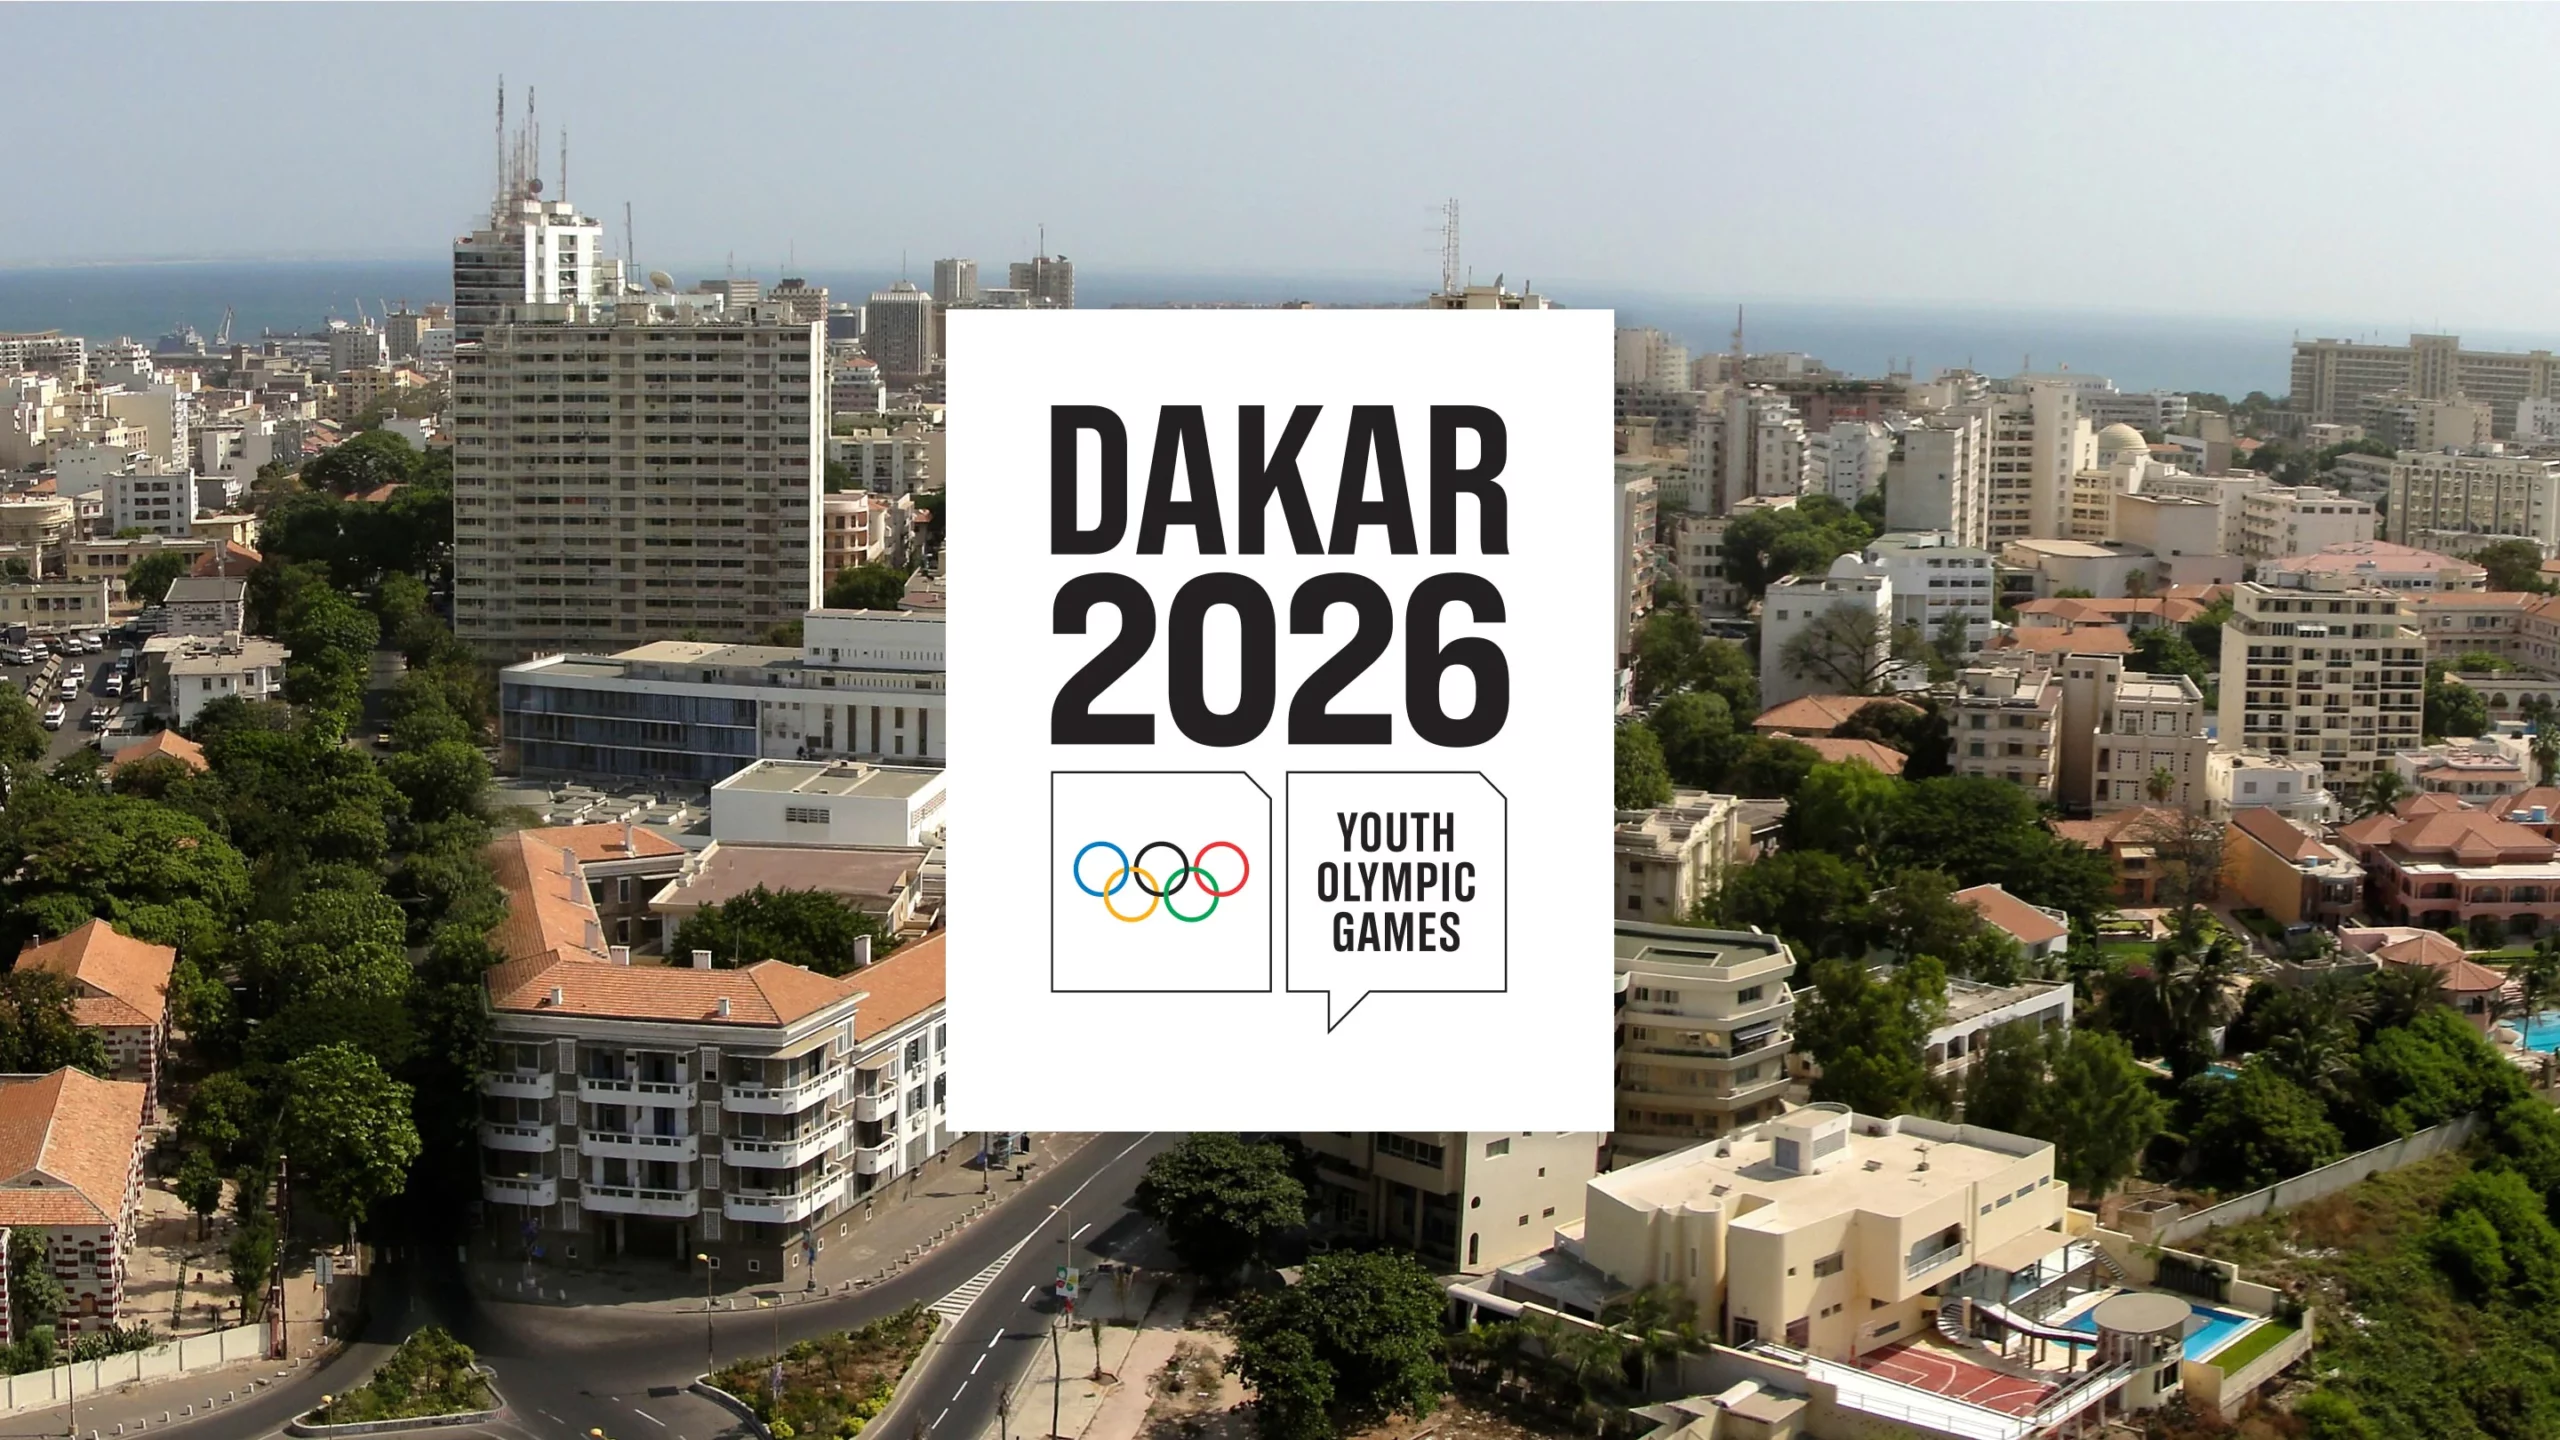 7è Jeux olympiques de la Jeunesse à Dakar en 2026: Le CIO fier du niveau des préparatifs lancés précocement par le Sénégal